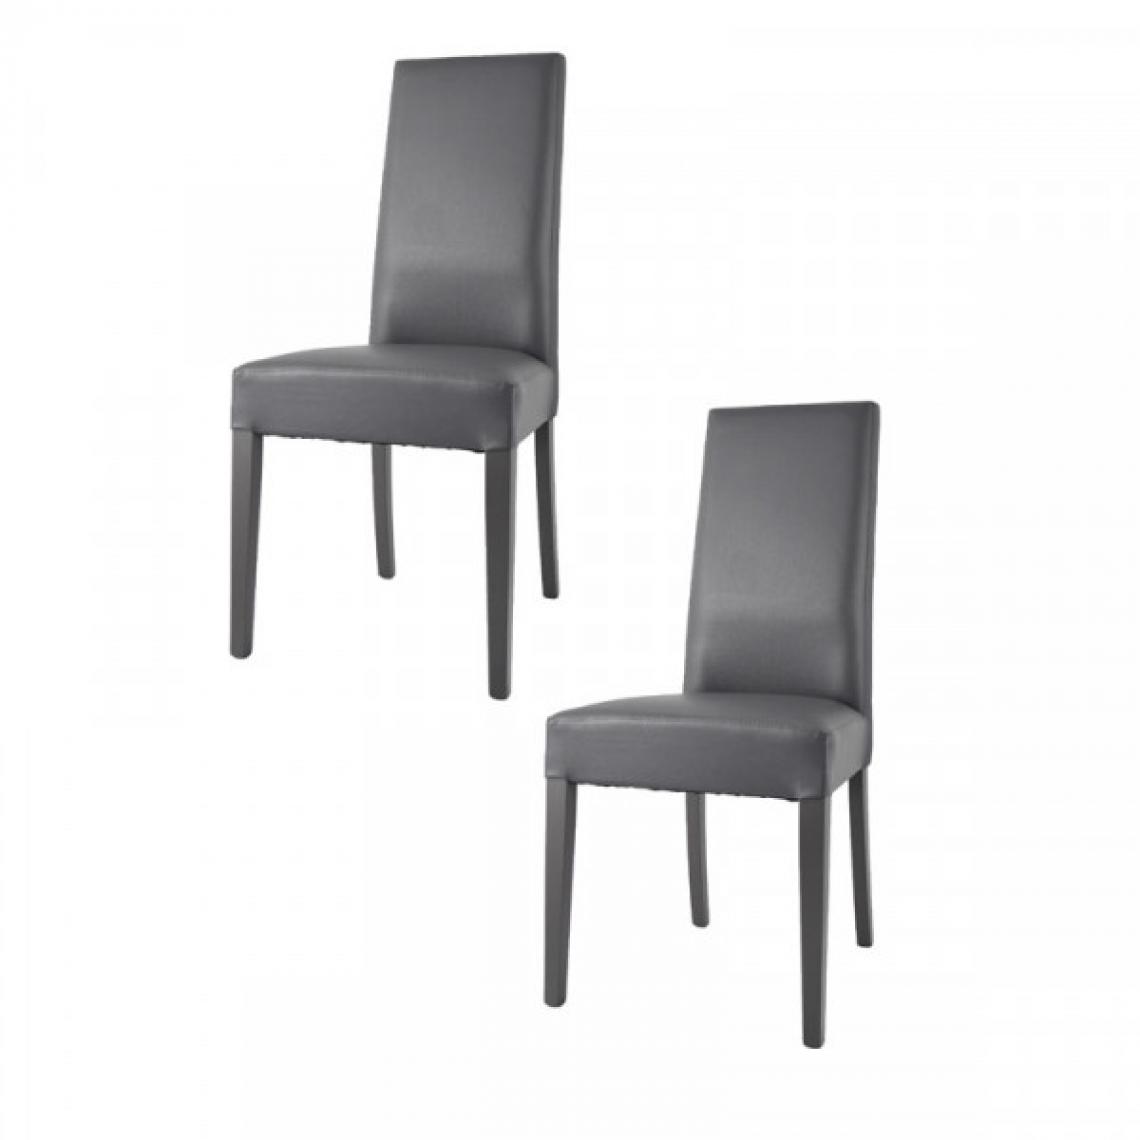 Dansmamaison - Duo de chaises en similicuir Gris foncé - VENISE - L 54 x l 46 x H 99 cm - Chaises